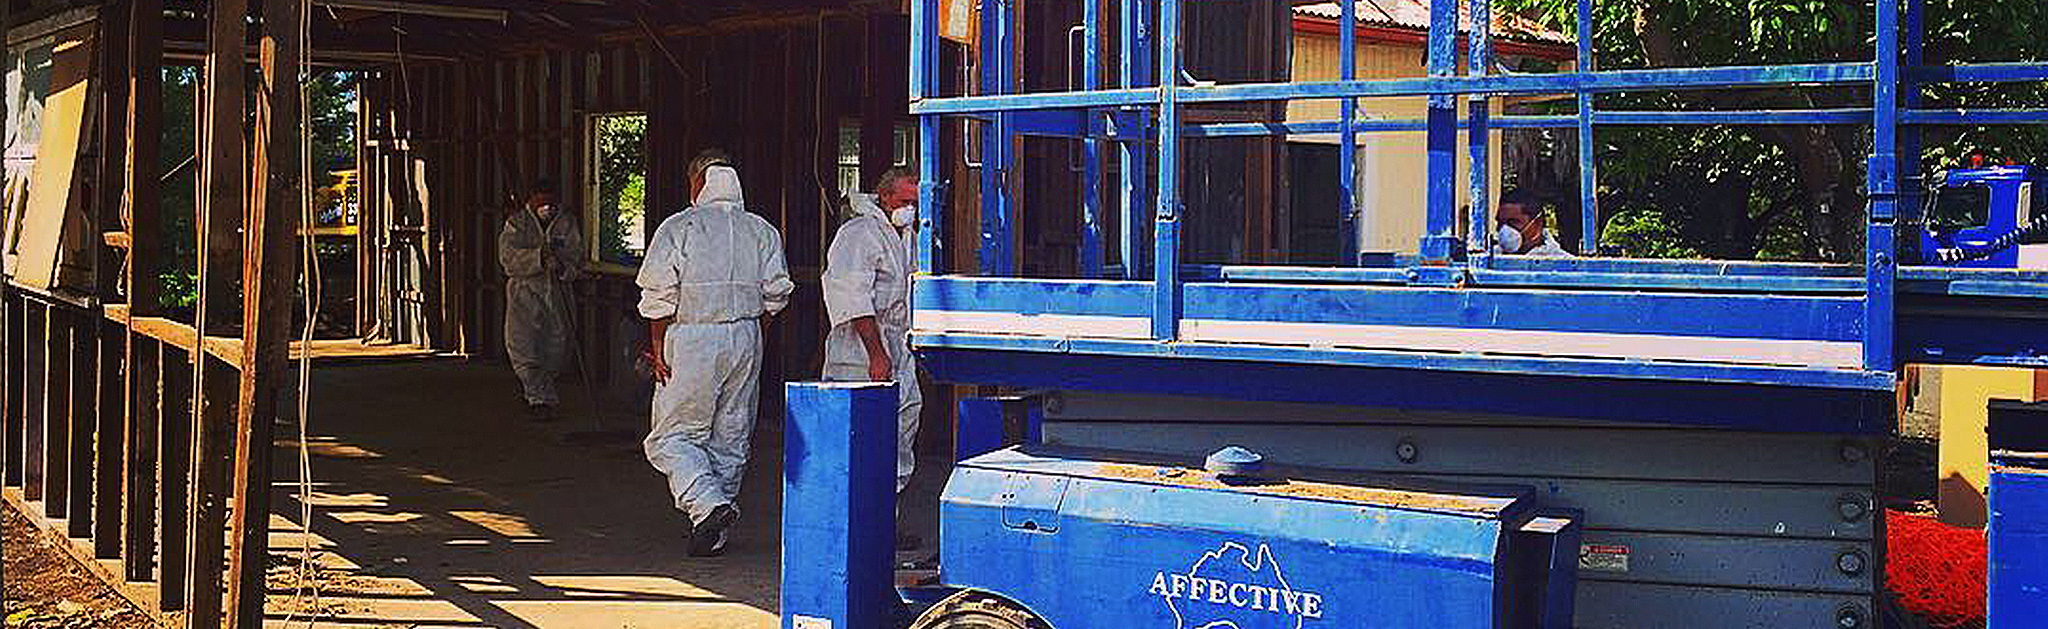 Asbestos removal